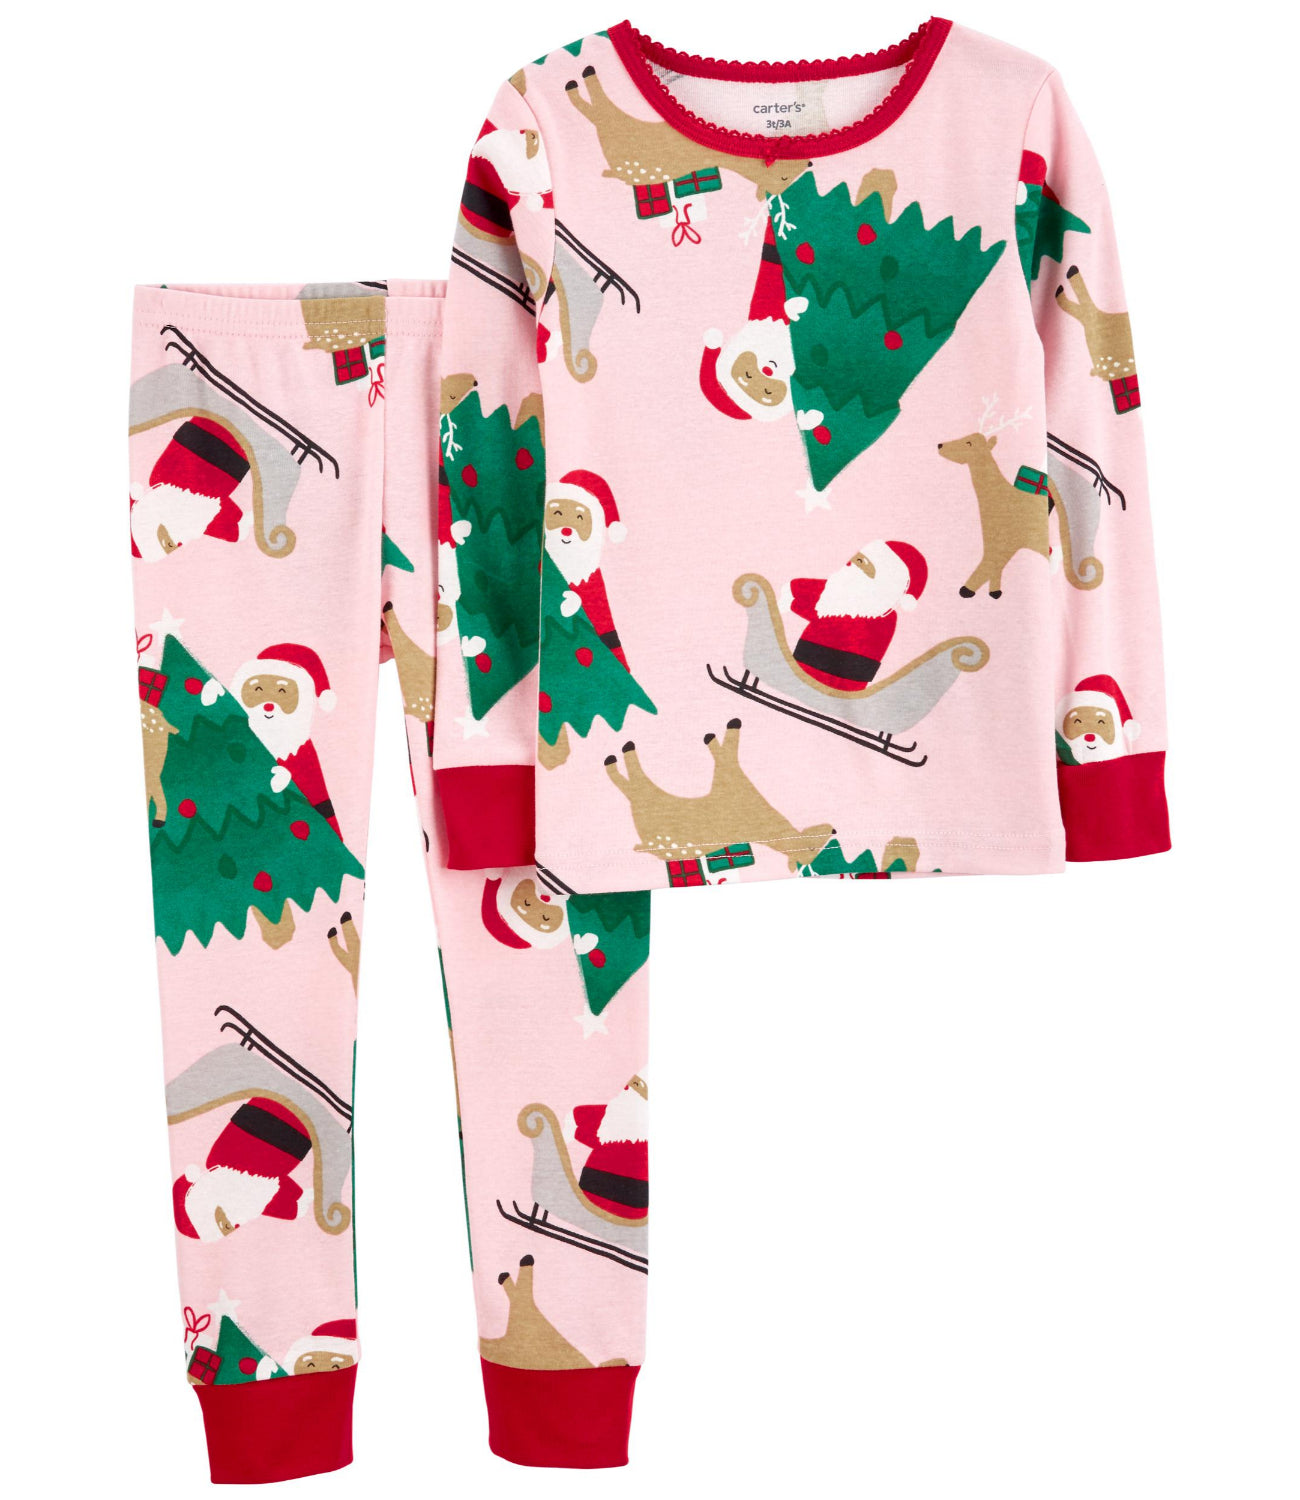 Carters Girls 2T-5T 2-Piece Christmas 100% Snug Fit Cotton PJ Set